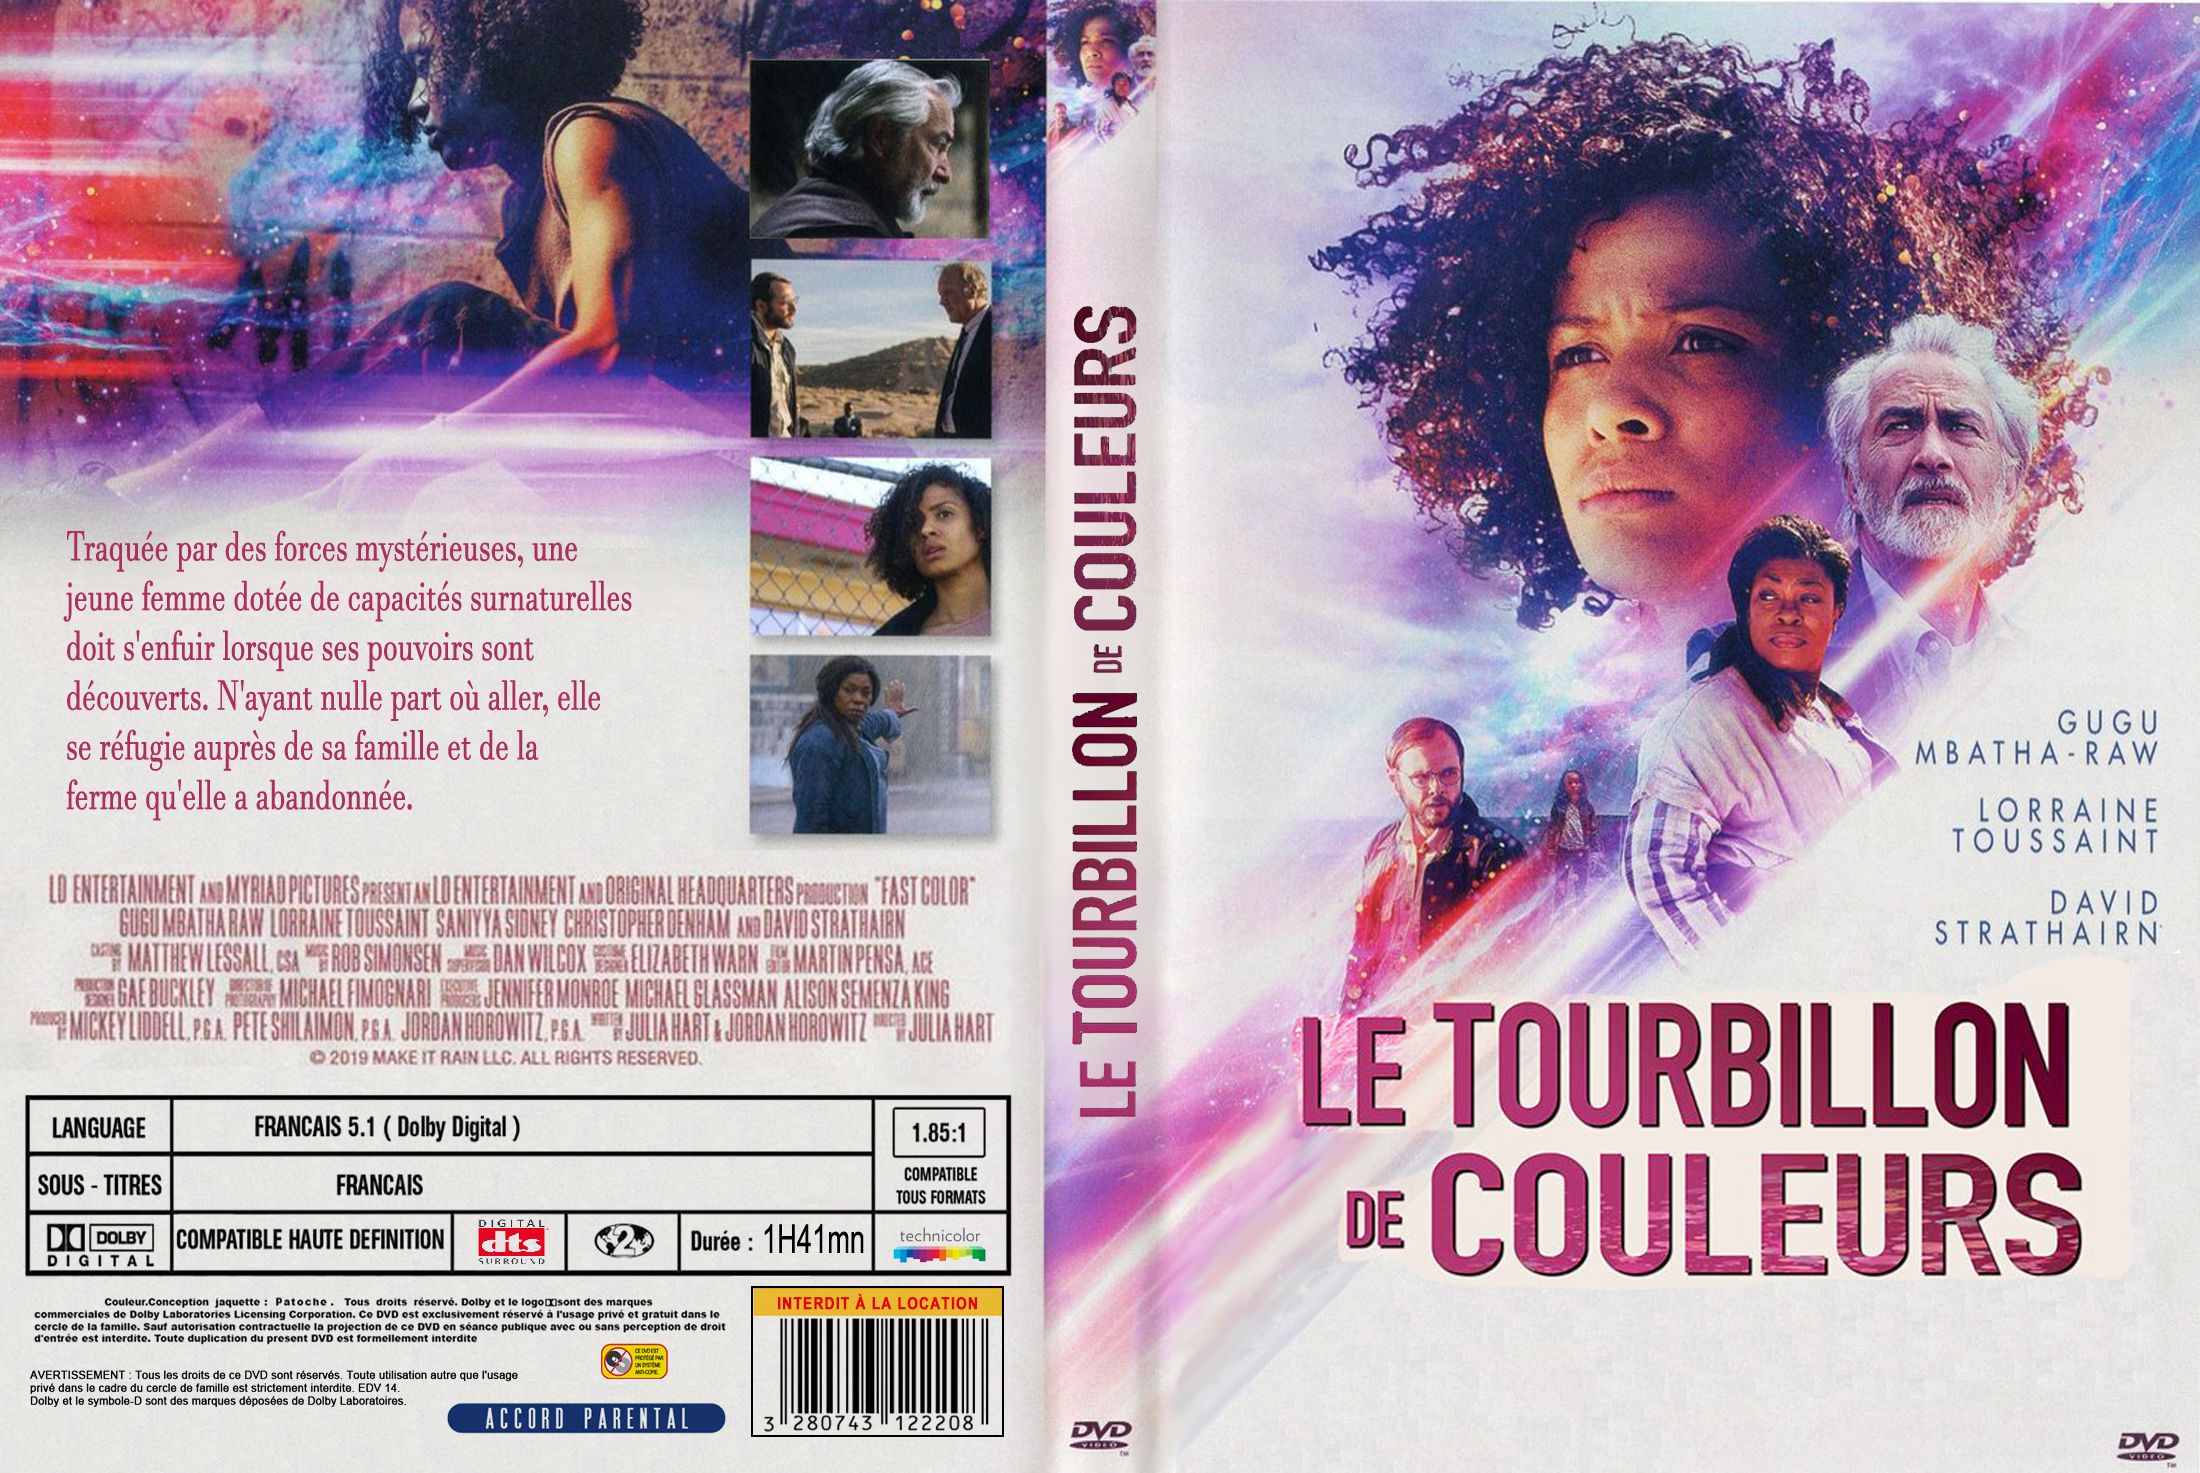 Jaquette DVD Le tourbillon de couleurs custom